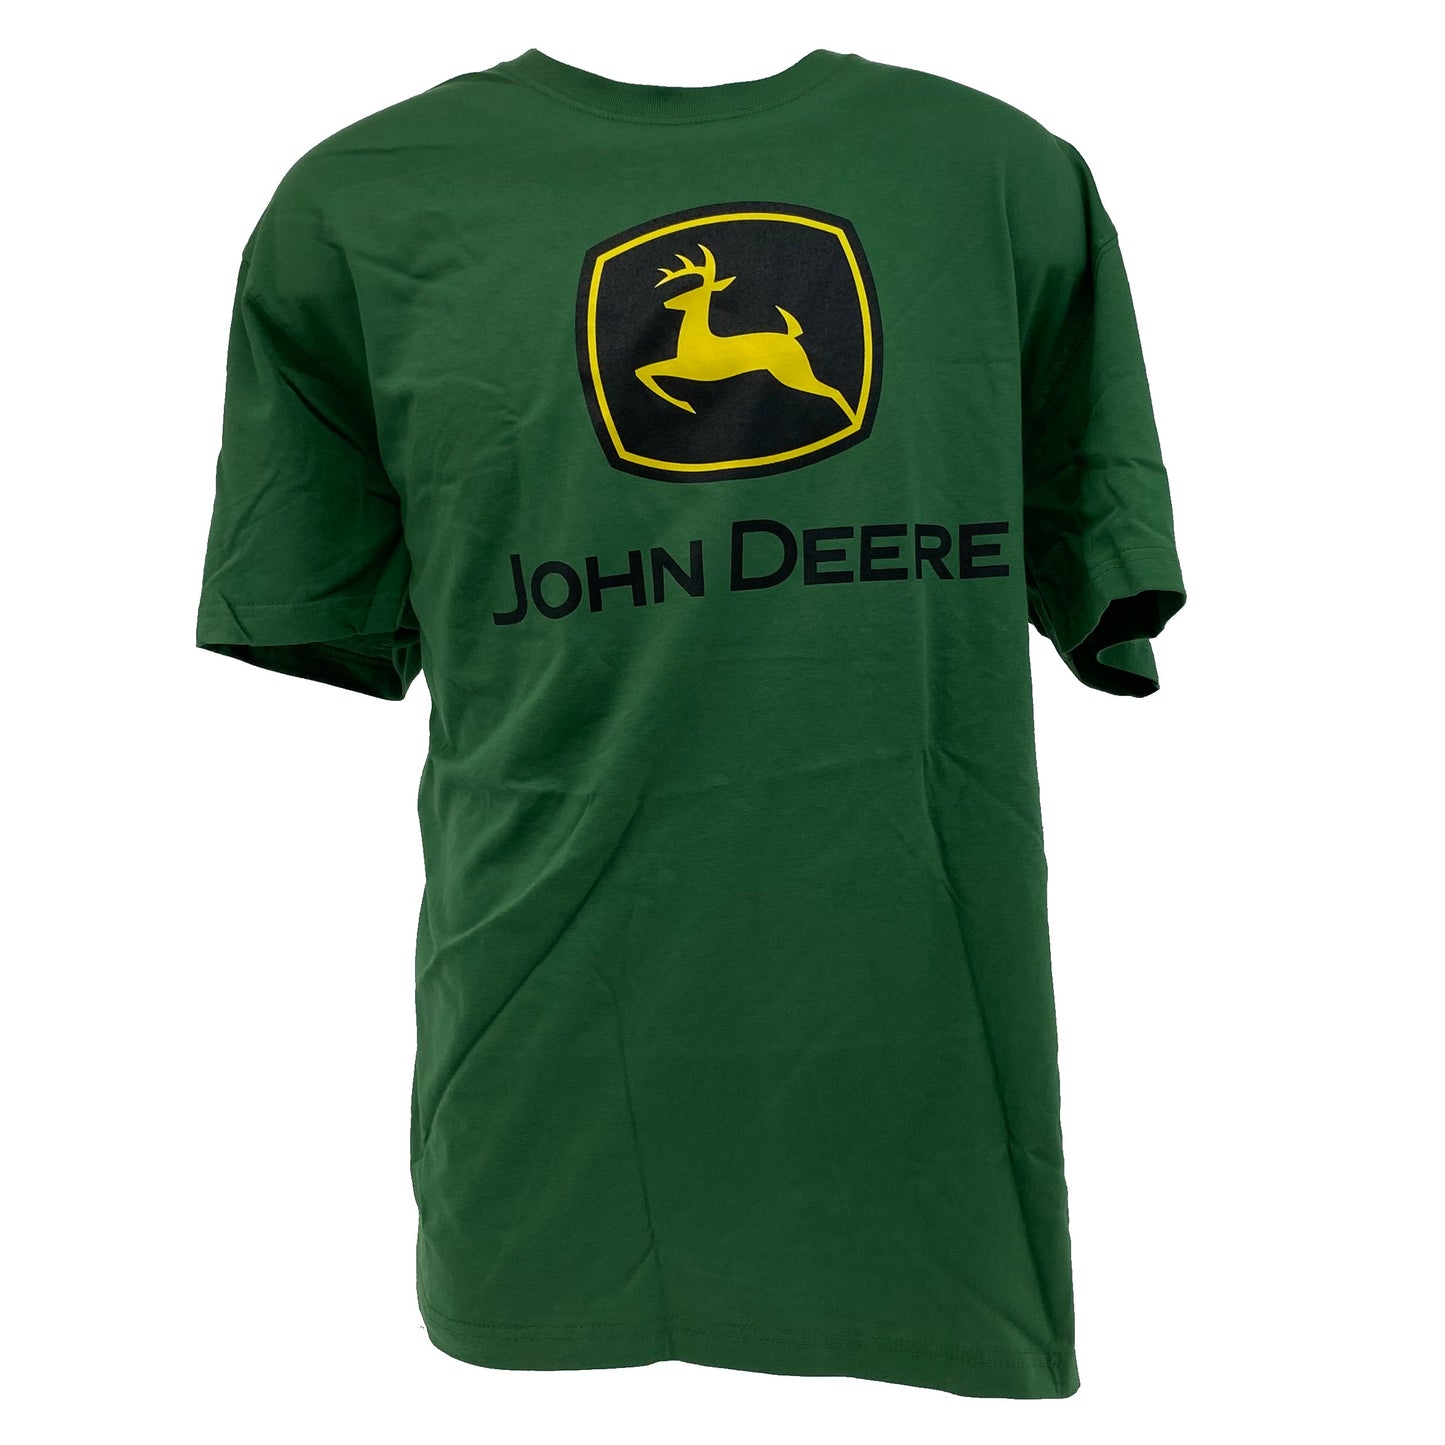 John Deere Green T-Shirt XL - LP75679